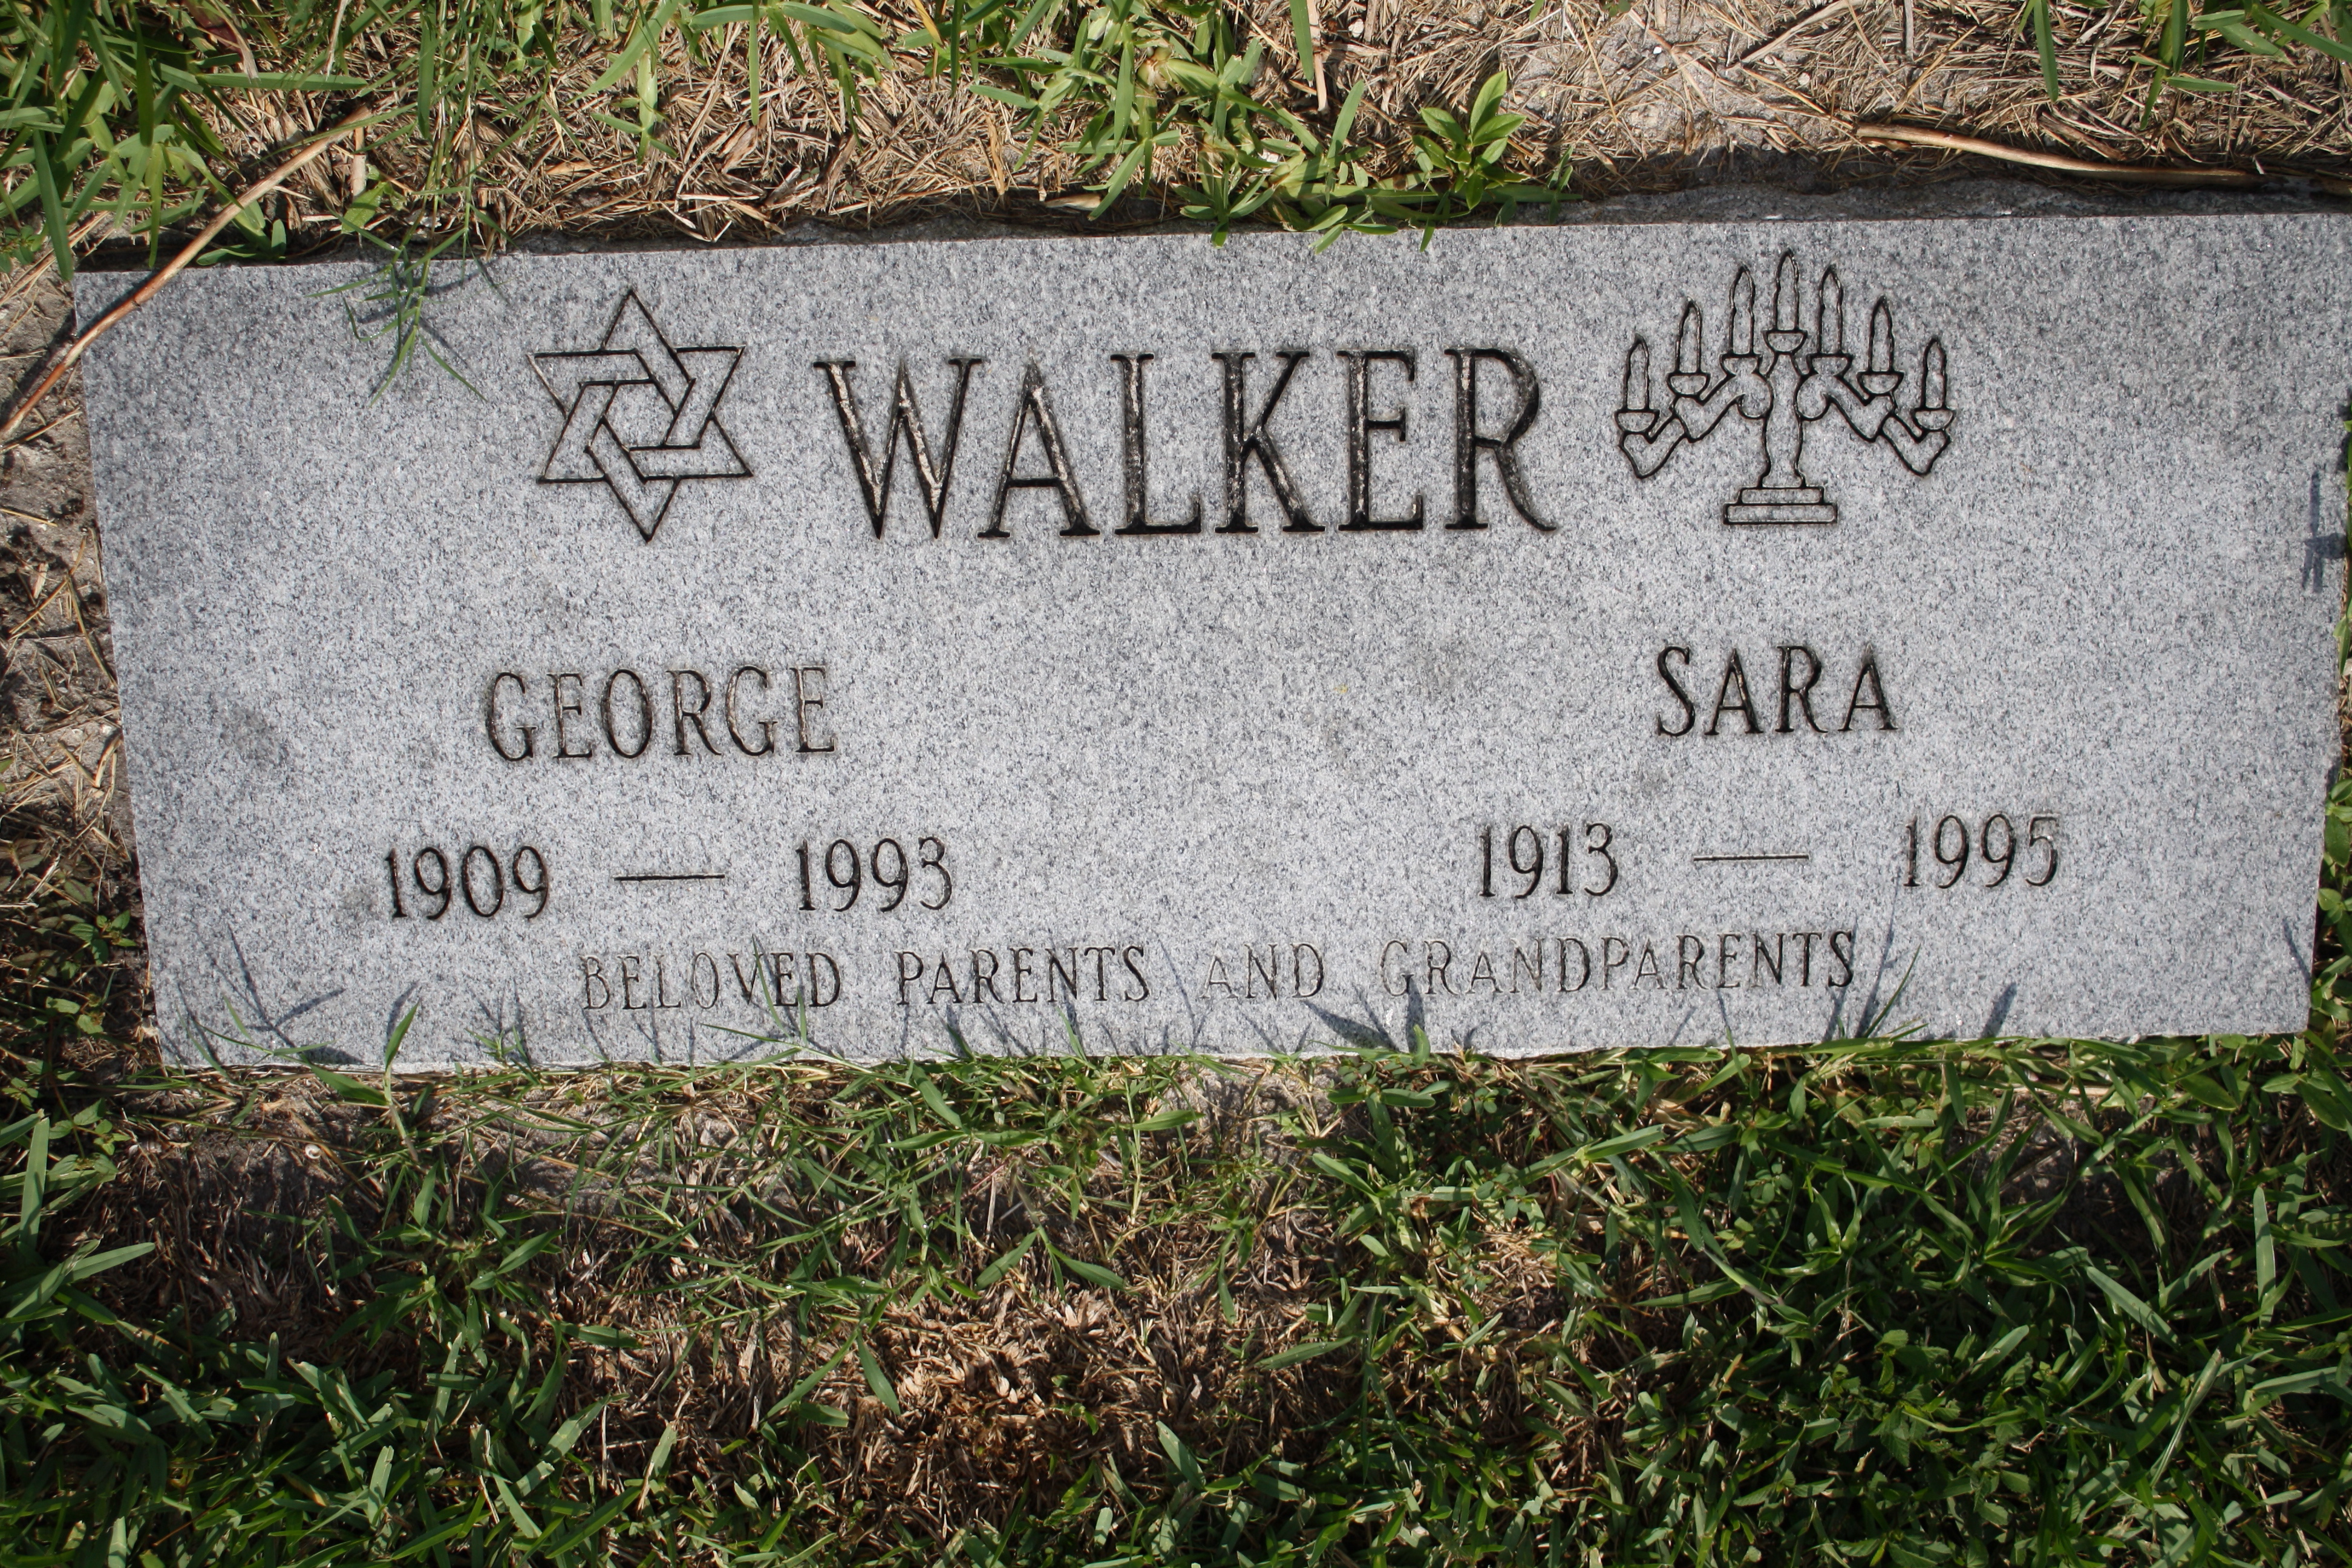 George Walker